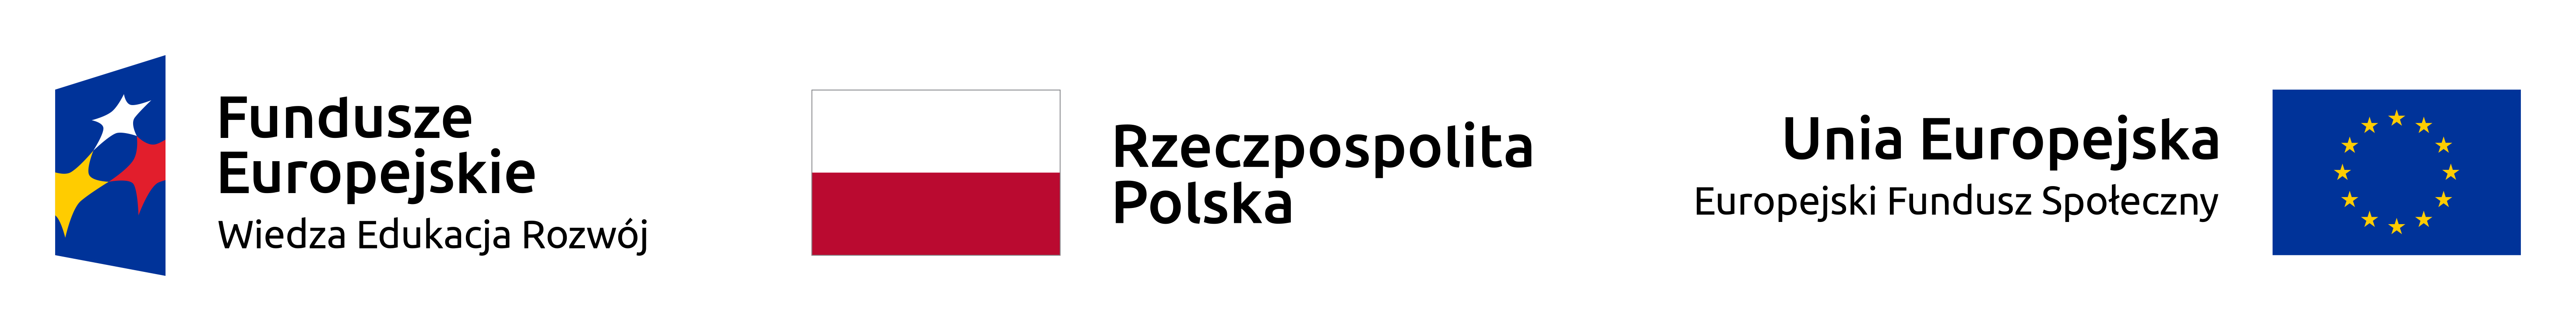 Logo Funduszy Europejskich programu Wiedza Edukacja Rozwój oraz Flagi Polski i Unii Europejskiej